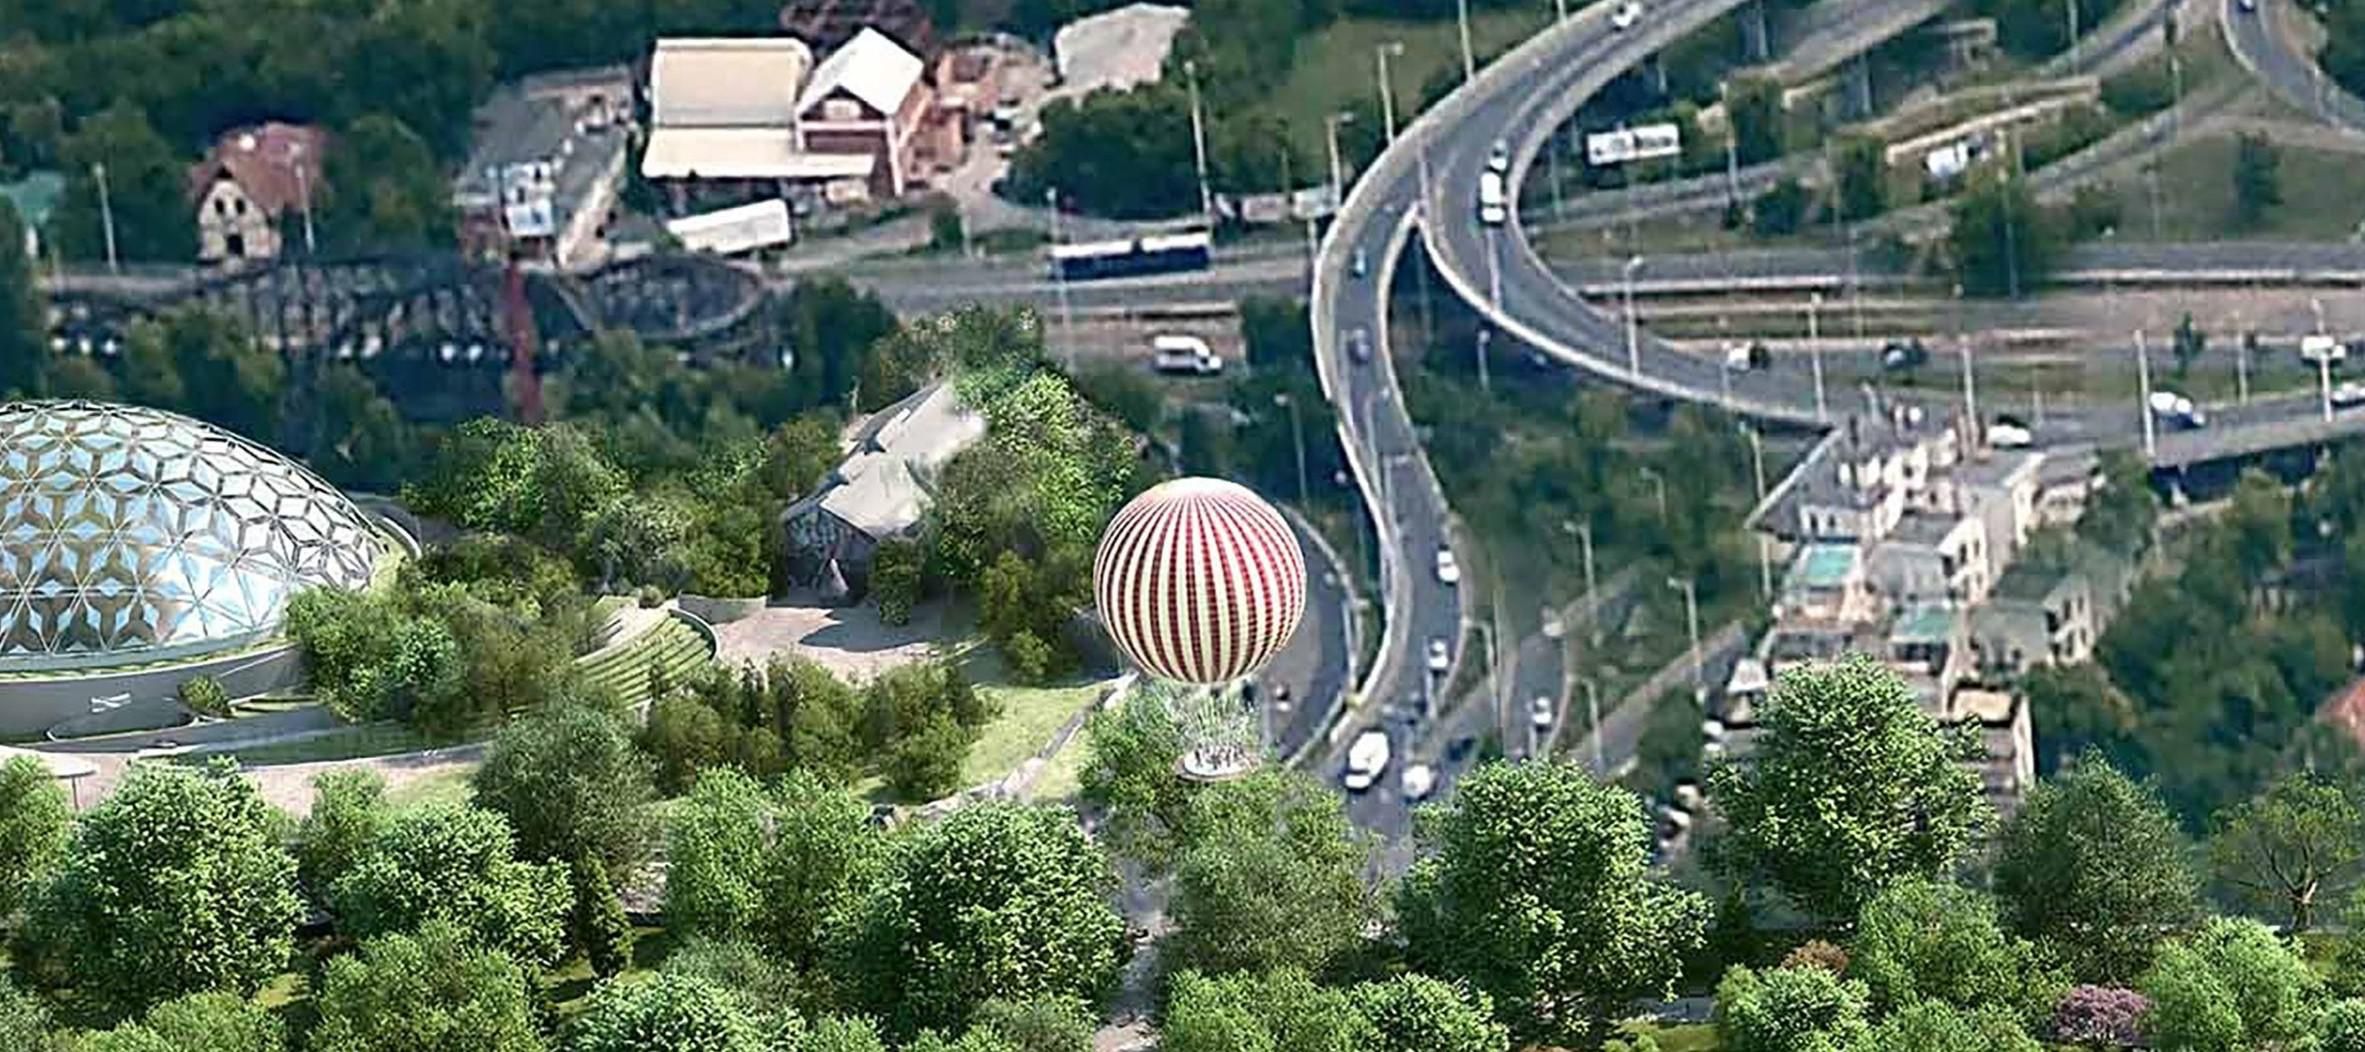 Visszatér a népszerű látványosság a Városligetbe, itt a Ballon kilátó látványterve